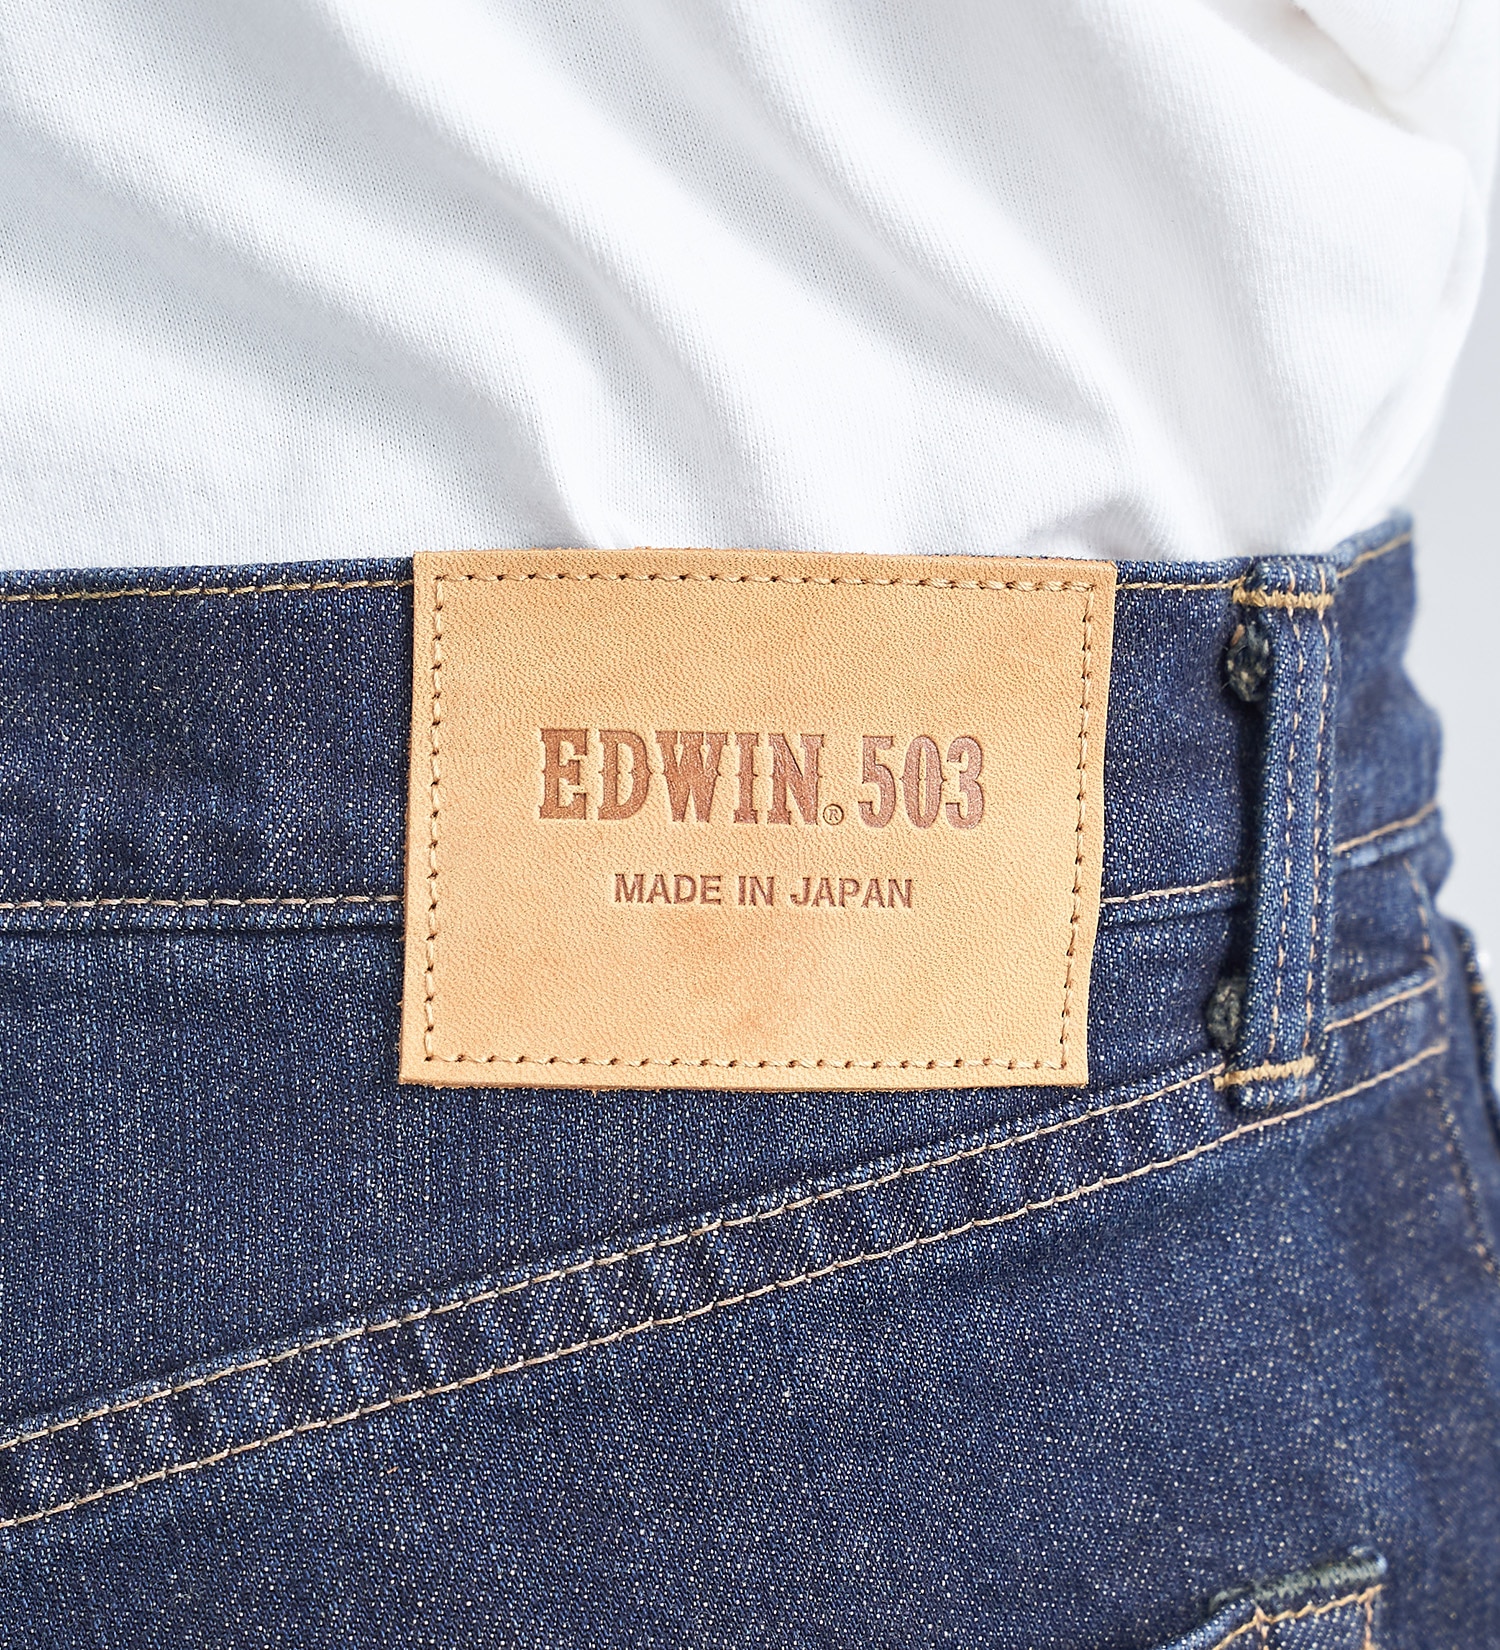 EDWIN(エドウイン)の【大きいサイズ】503 レギュラーストレートパンツ REGULAR STRAIGHT MADE IN JAPAN 日本製|パンツ/デニムパンツ/メンズ|濃色ブルー